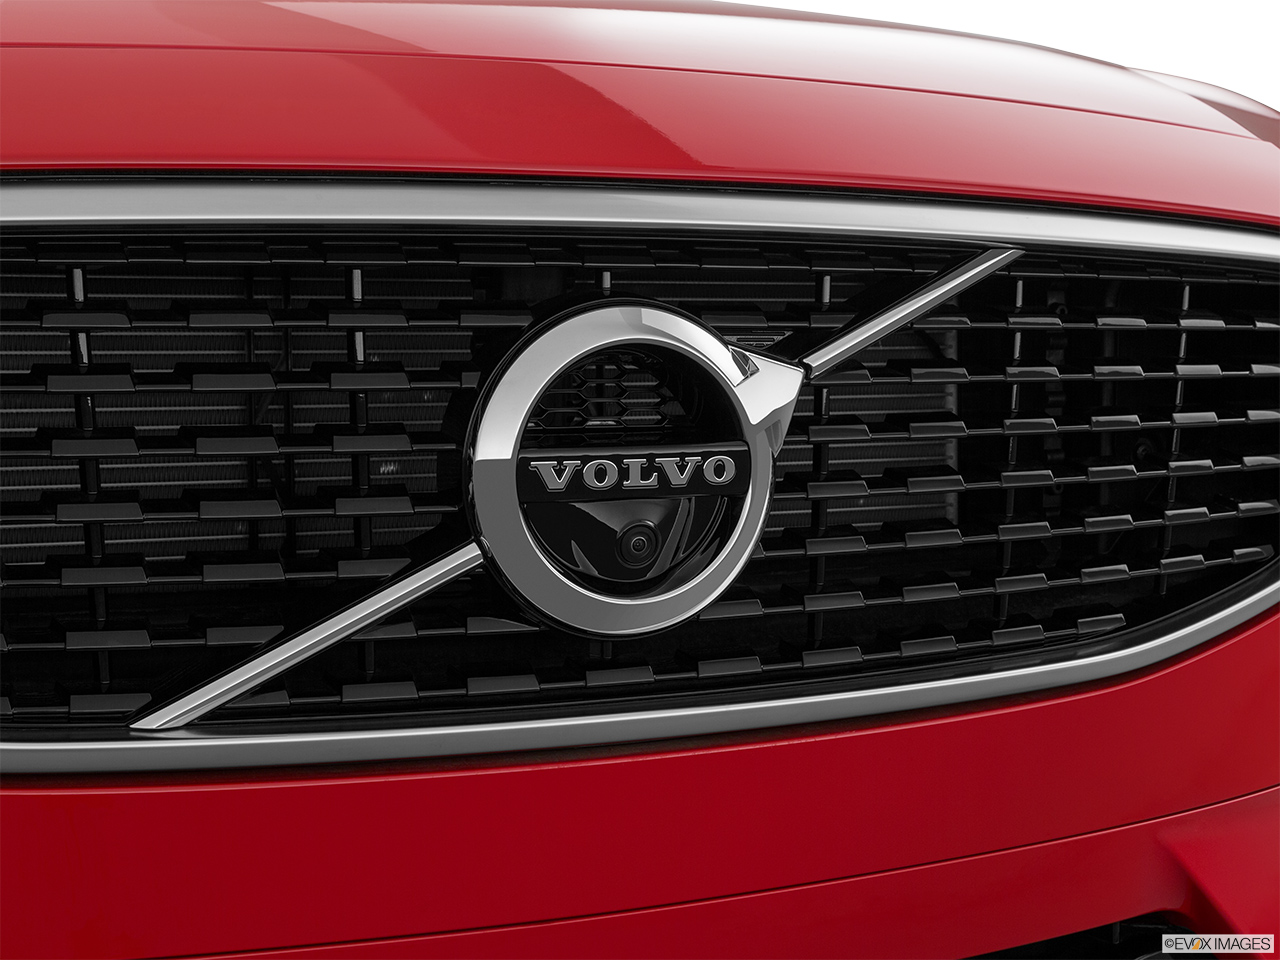 2019 Volvo V90 T5 R-Design Rear manufacture badge/emblem 